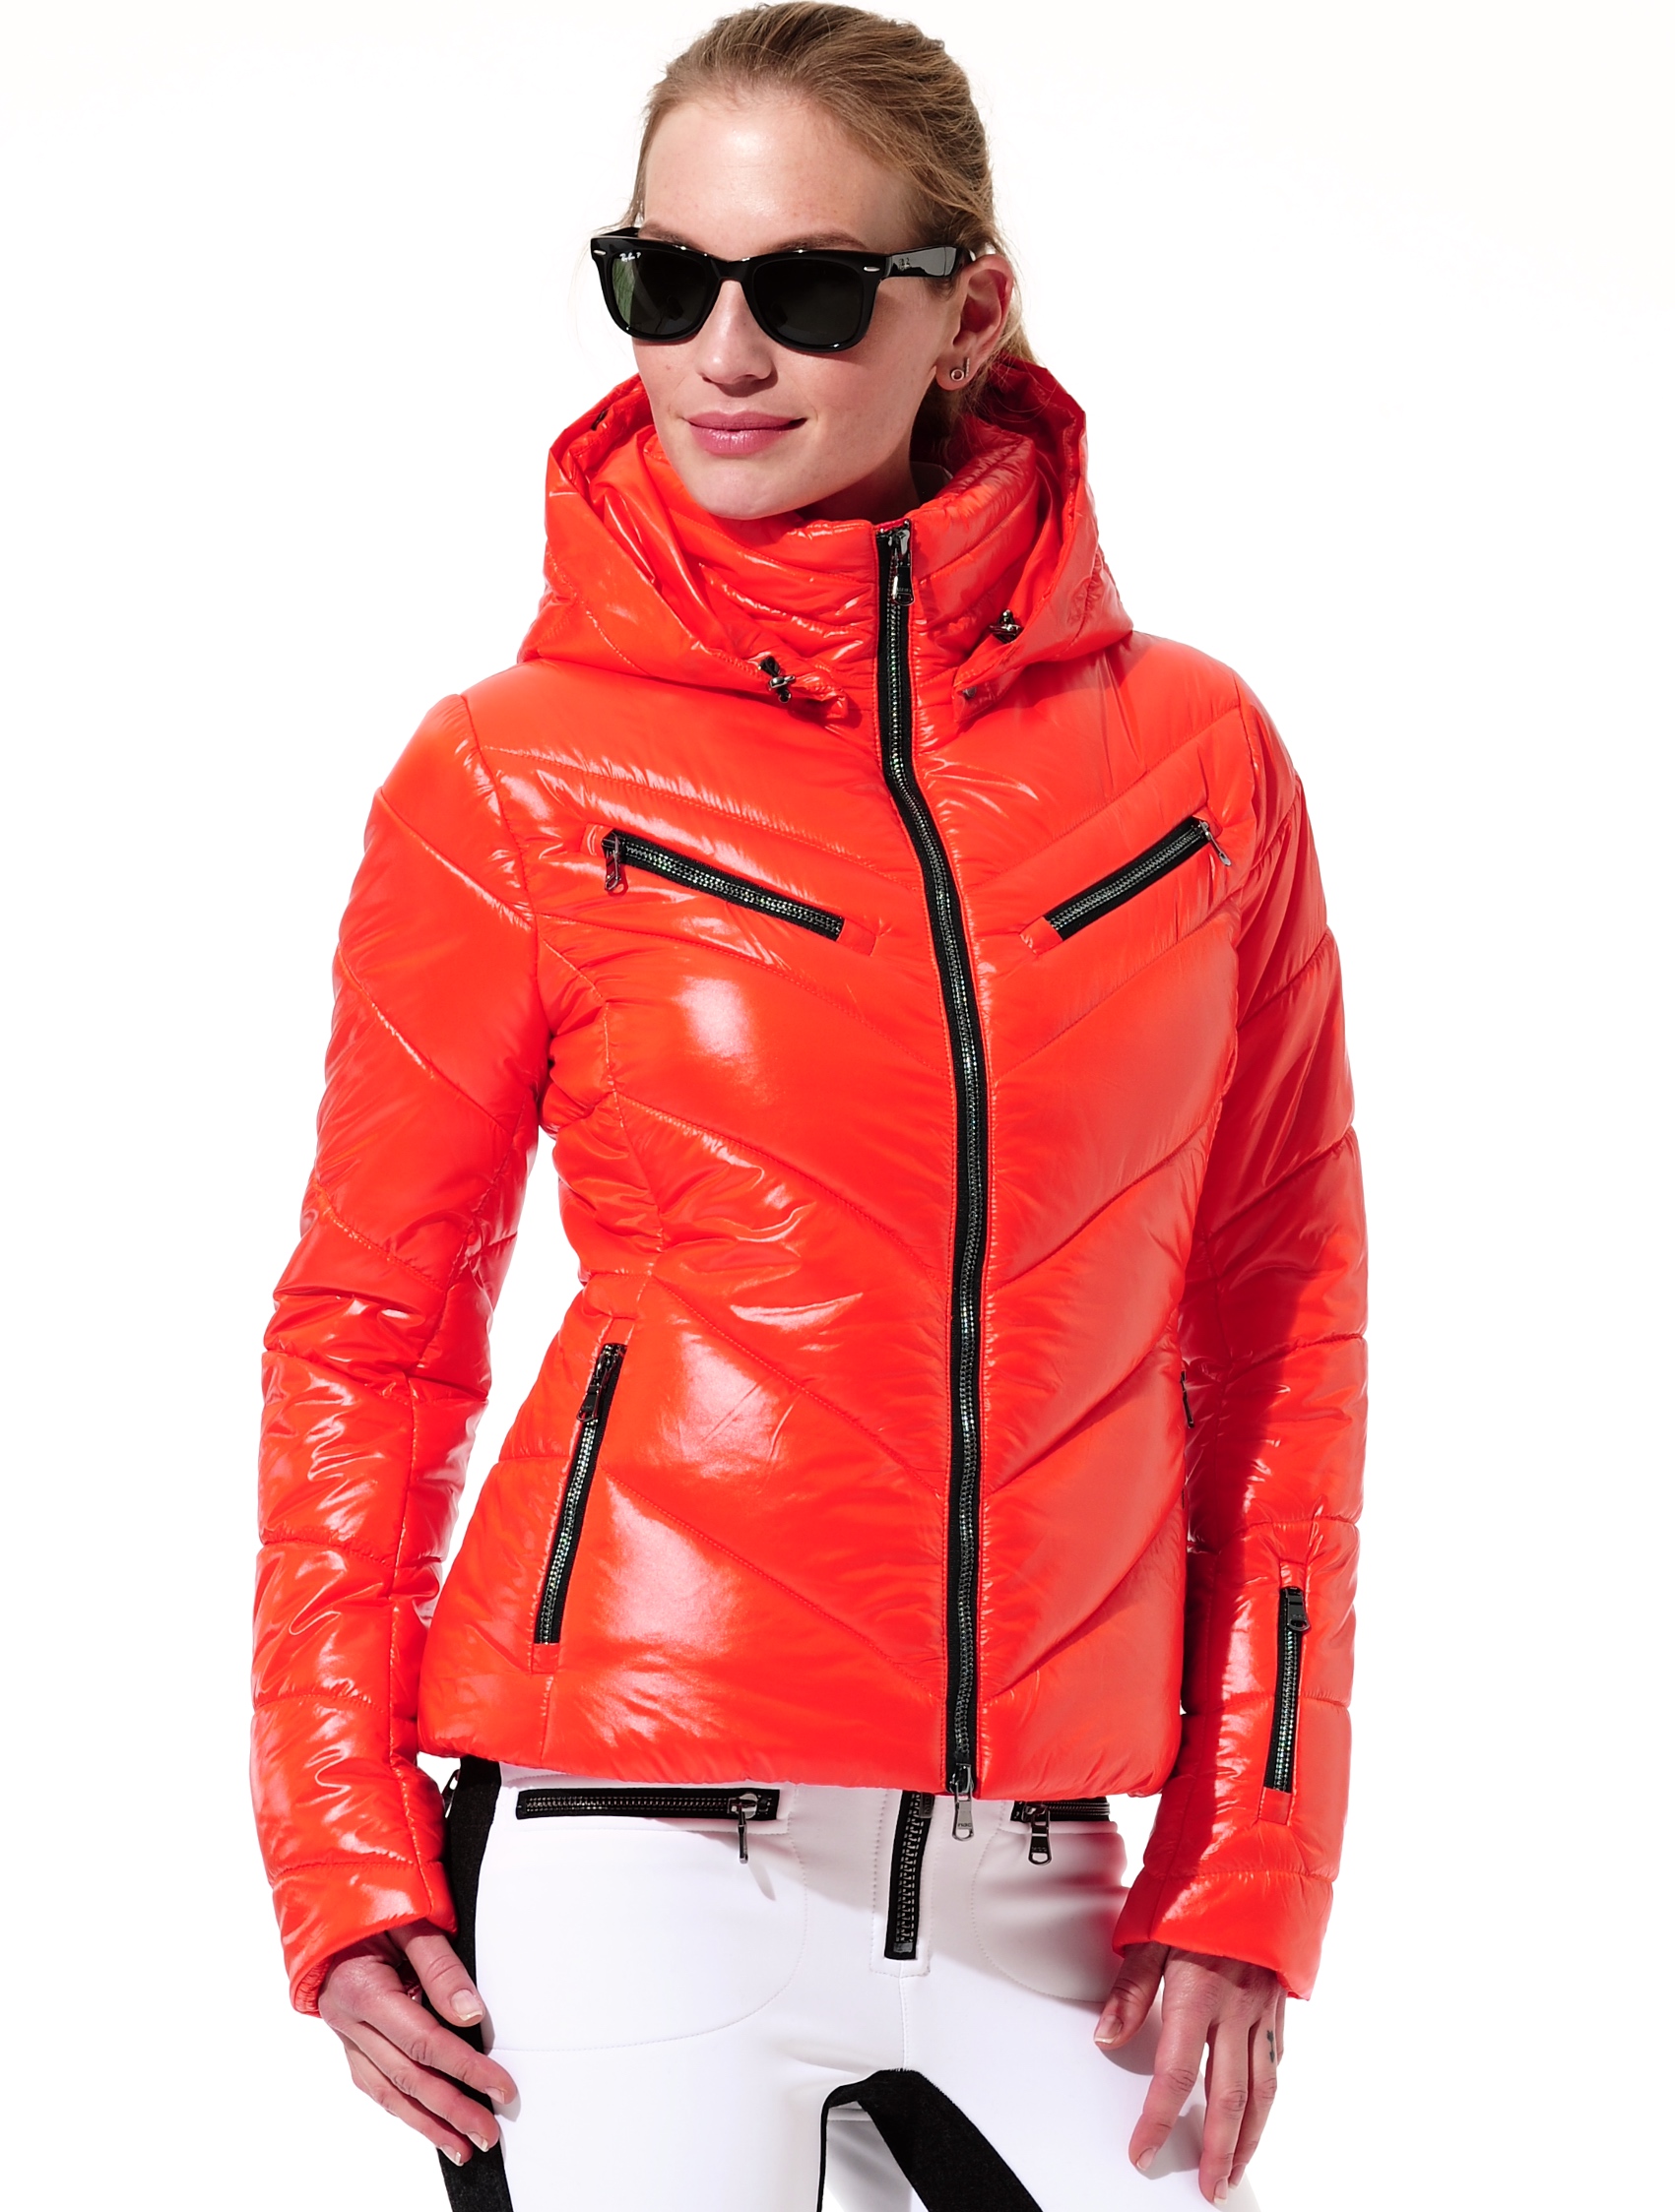 shiny ski jacket orange 